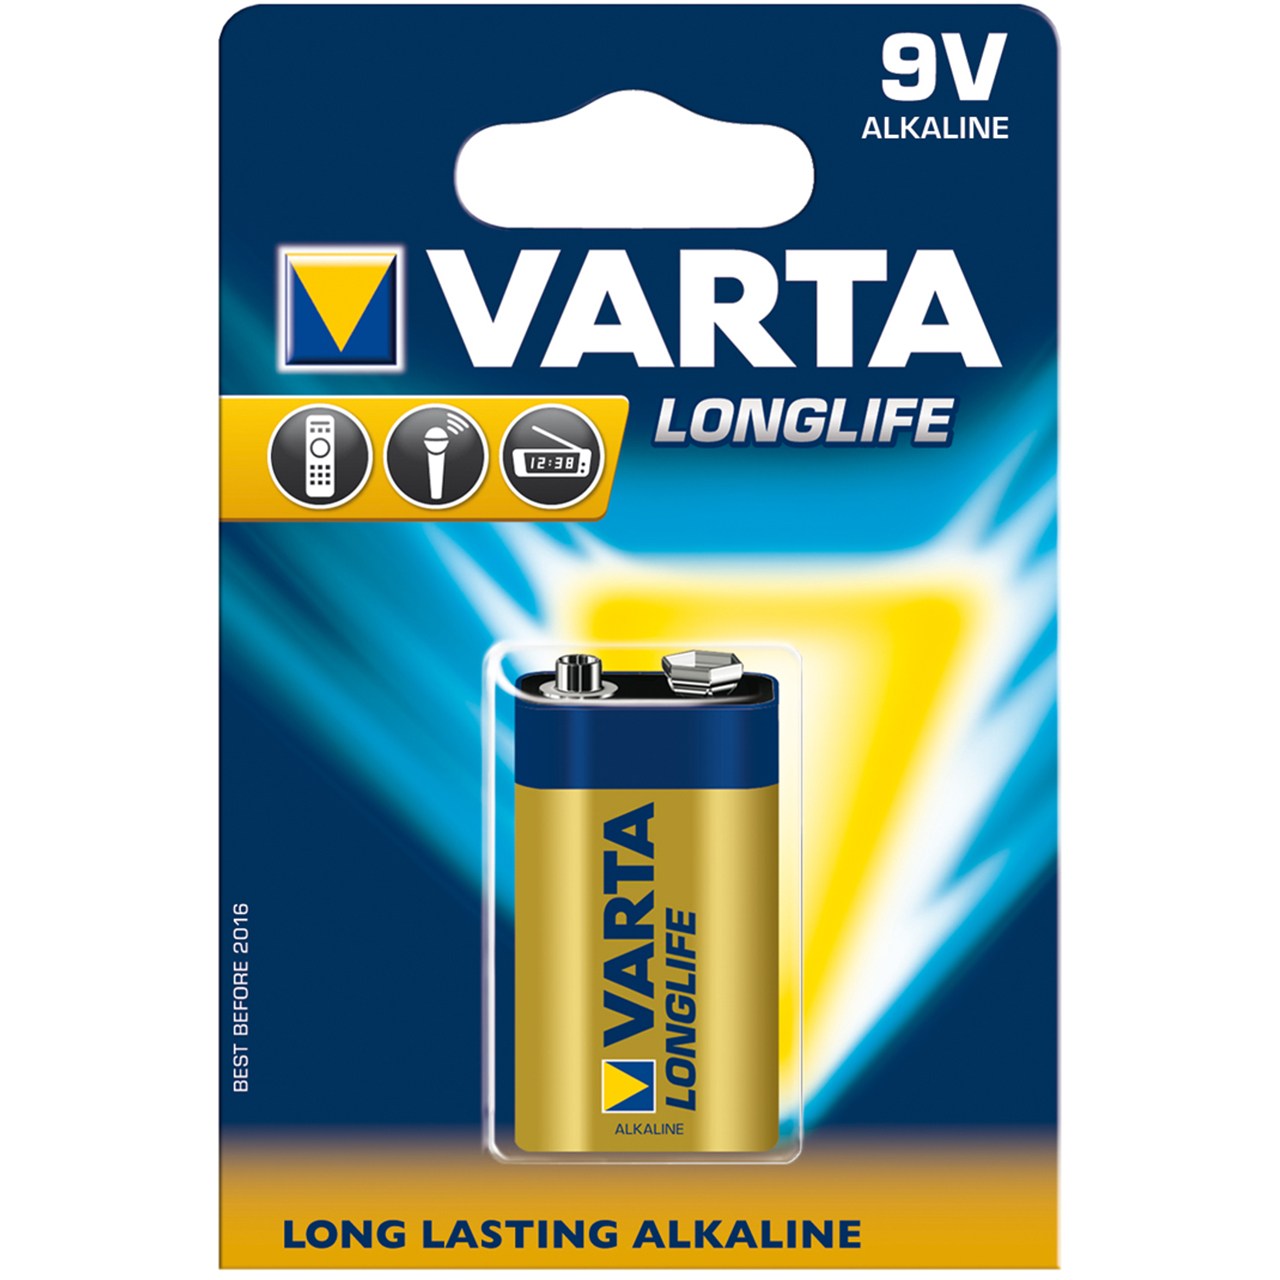 باتری کتابی وارتا مدل Longlife Alkaline 9V بسته یک عددی